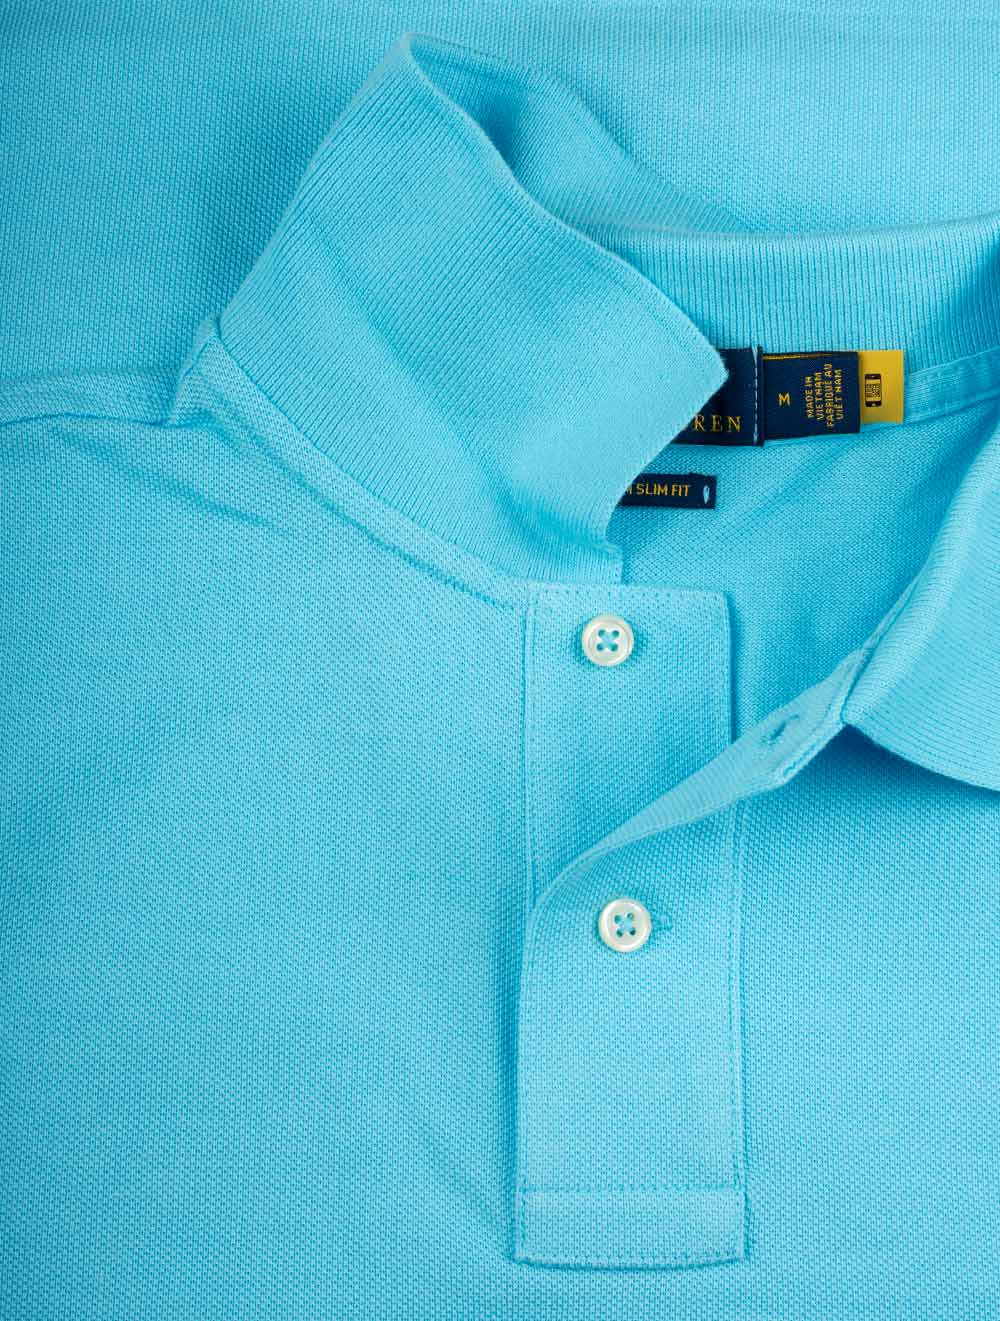 Basic Short Sleeve Polo Turquoise